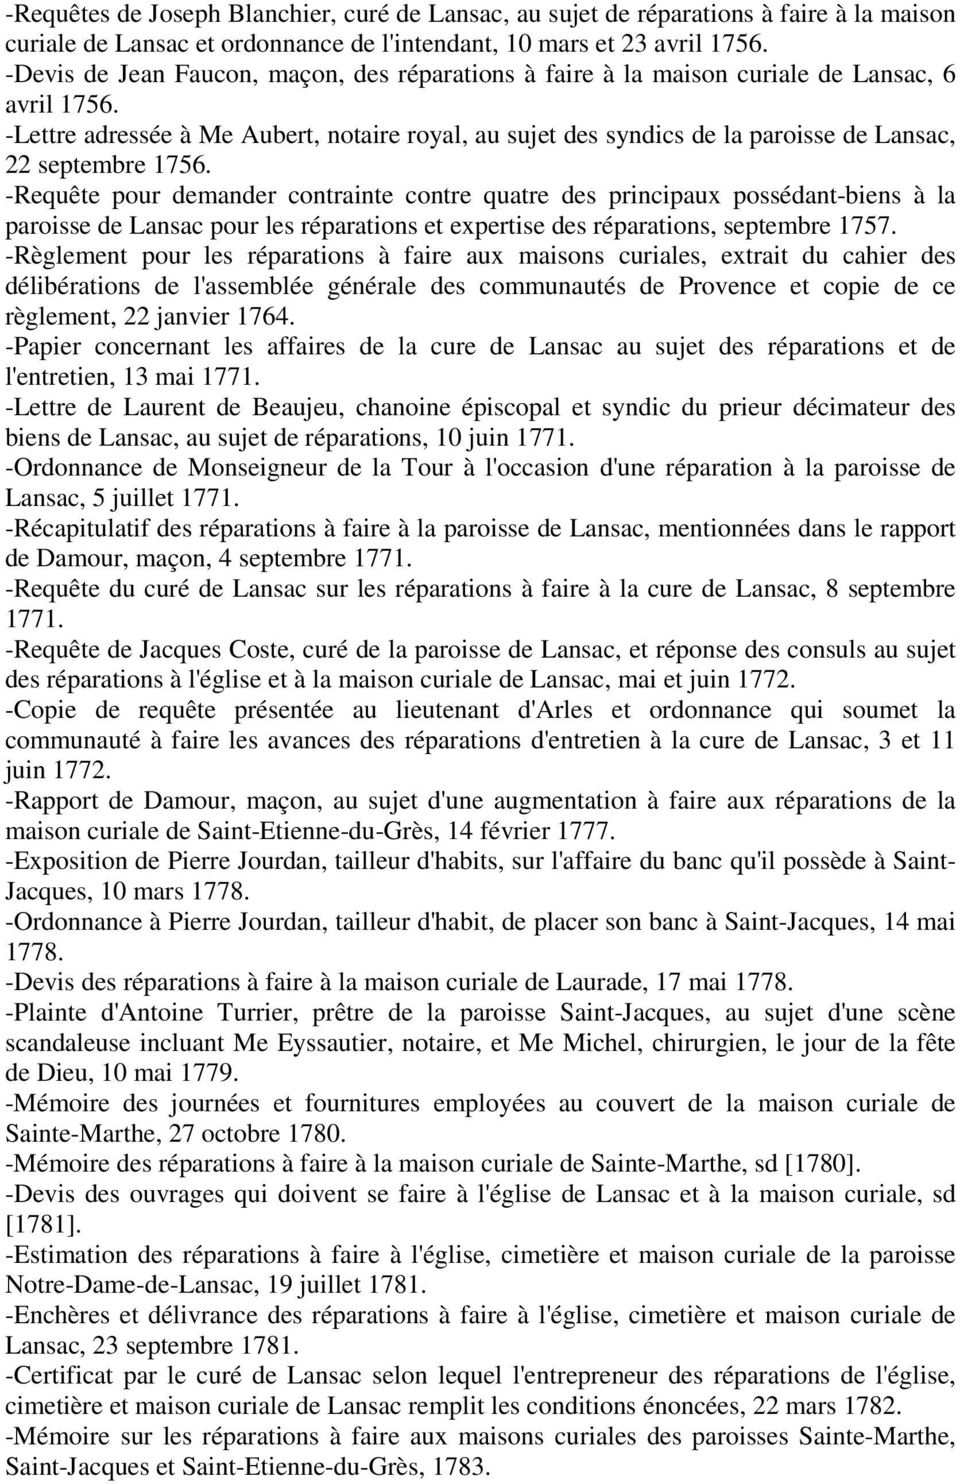 -Lettre adressée à Me Aubert, notaire royal, au sujet des syndics de la paroisse de Lansac, 22 septembre 1756.